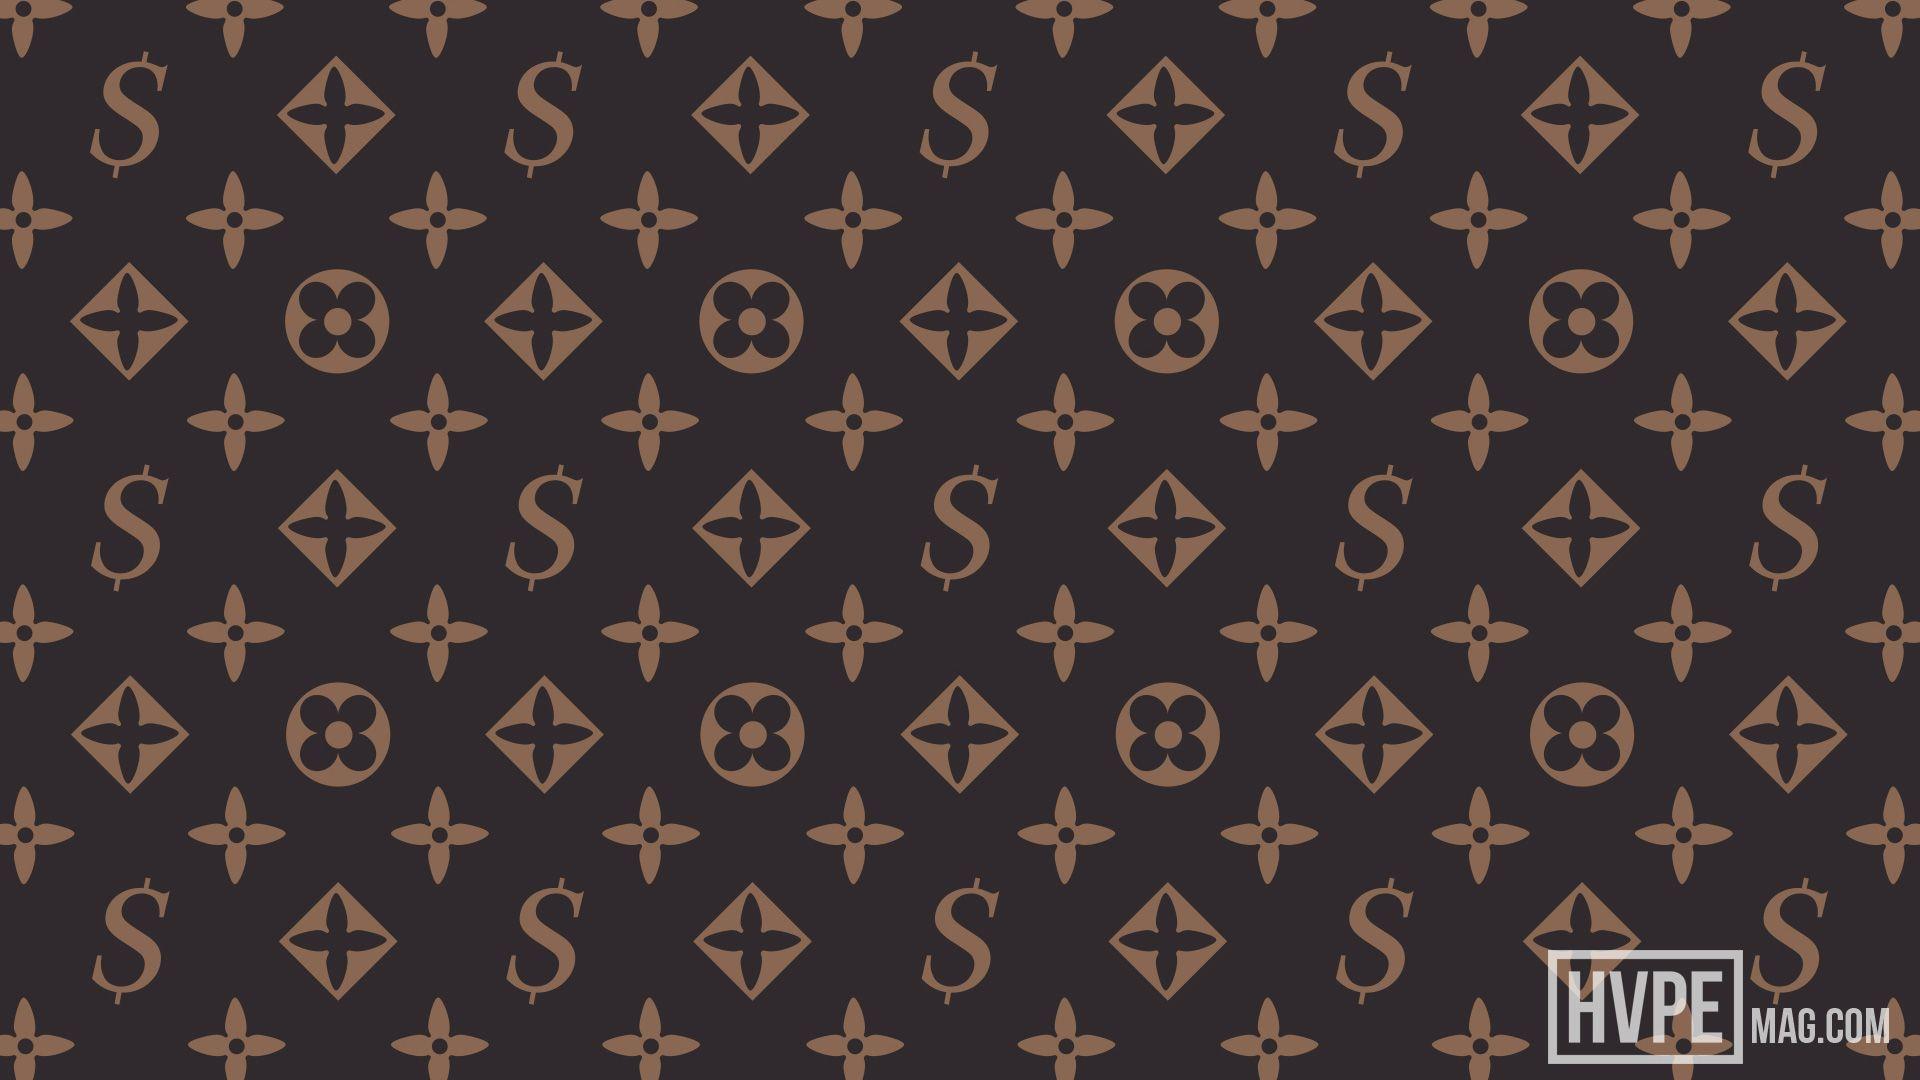 wallpaper supreme louis vuitton pattern